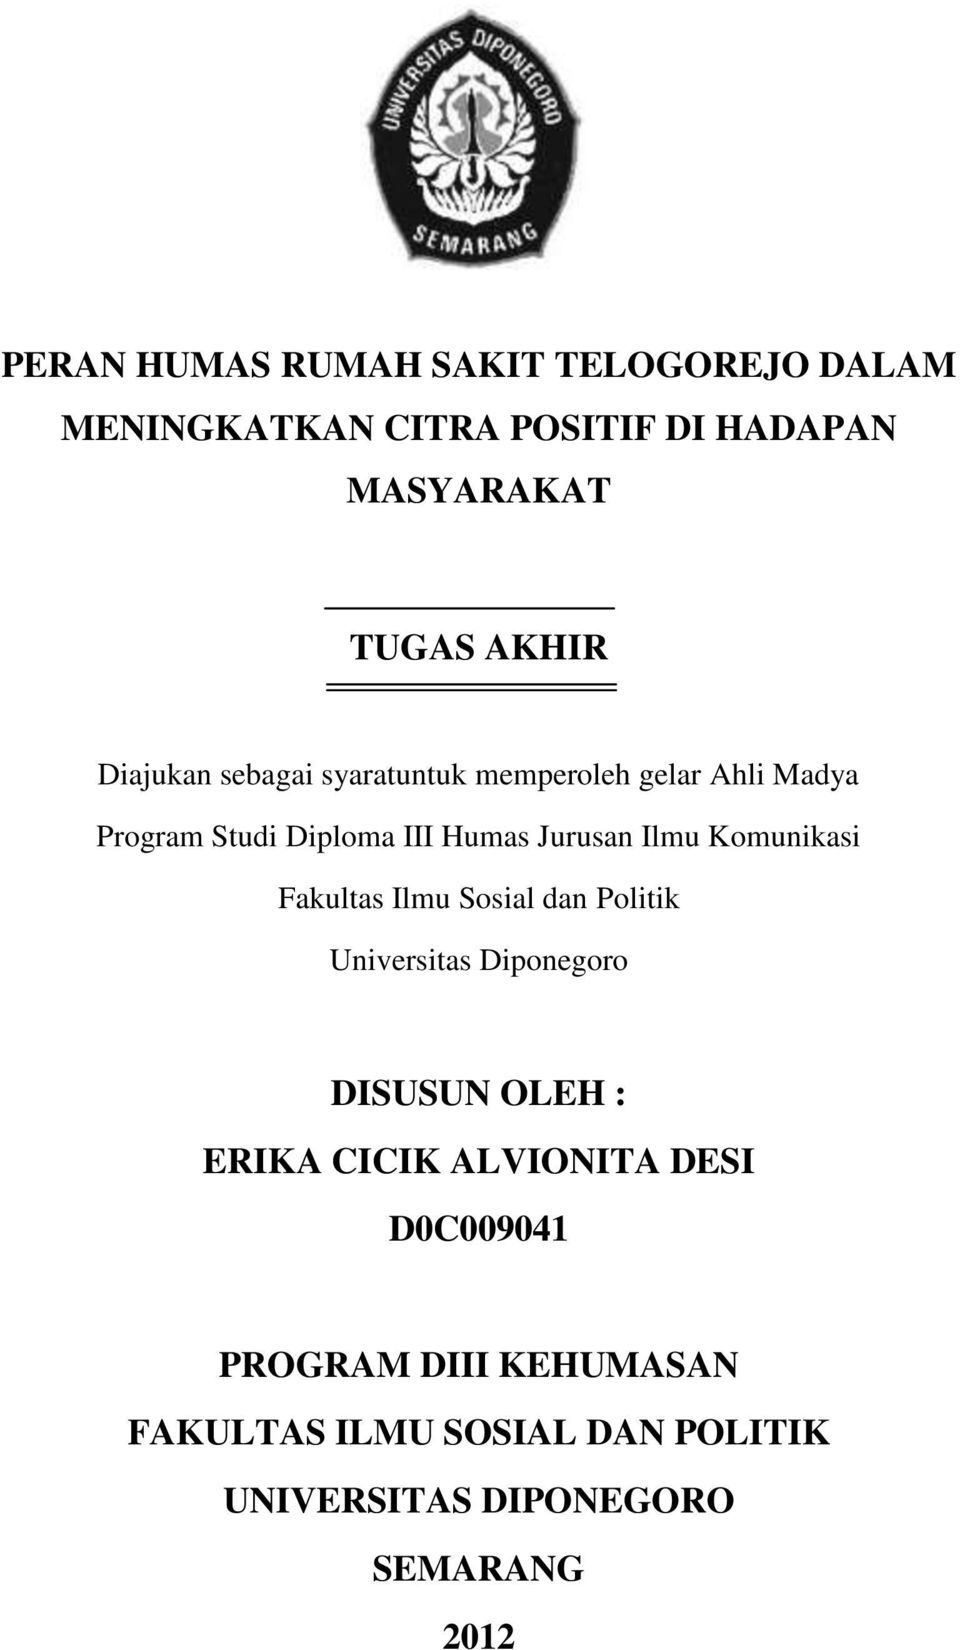 Komunikasi Fakultas Ilmu Sosial dan Politik Universitas Diponegoro DISUSUN OLEH : ERIKA CICIK ALVIONITA